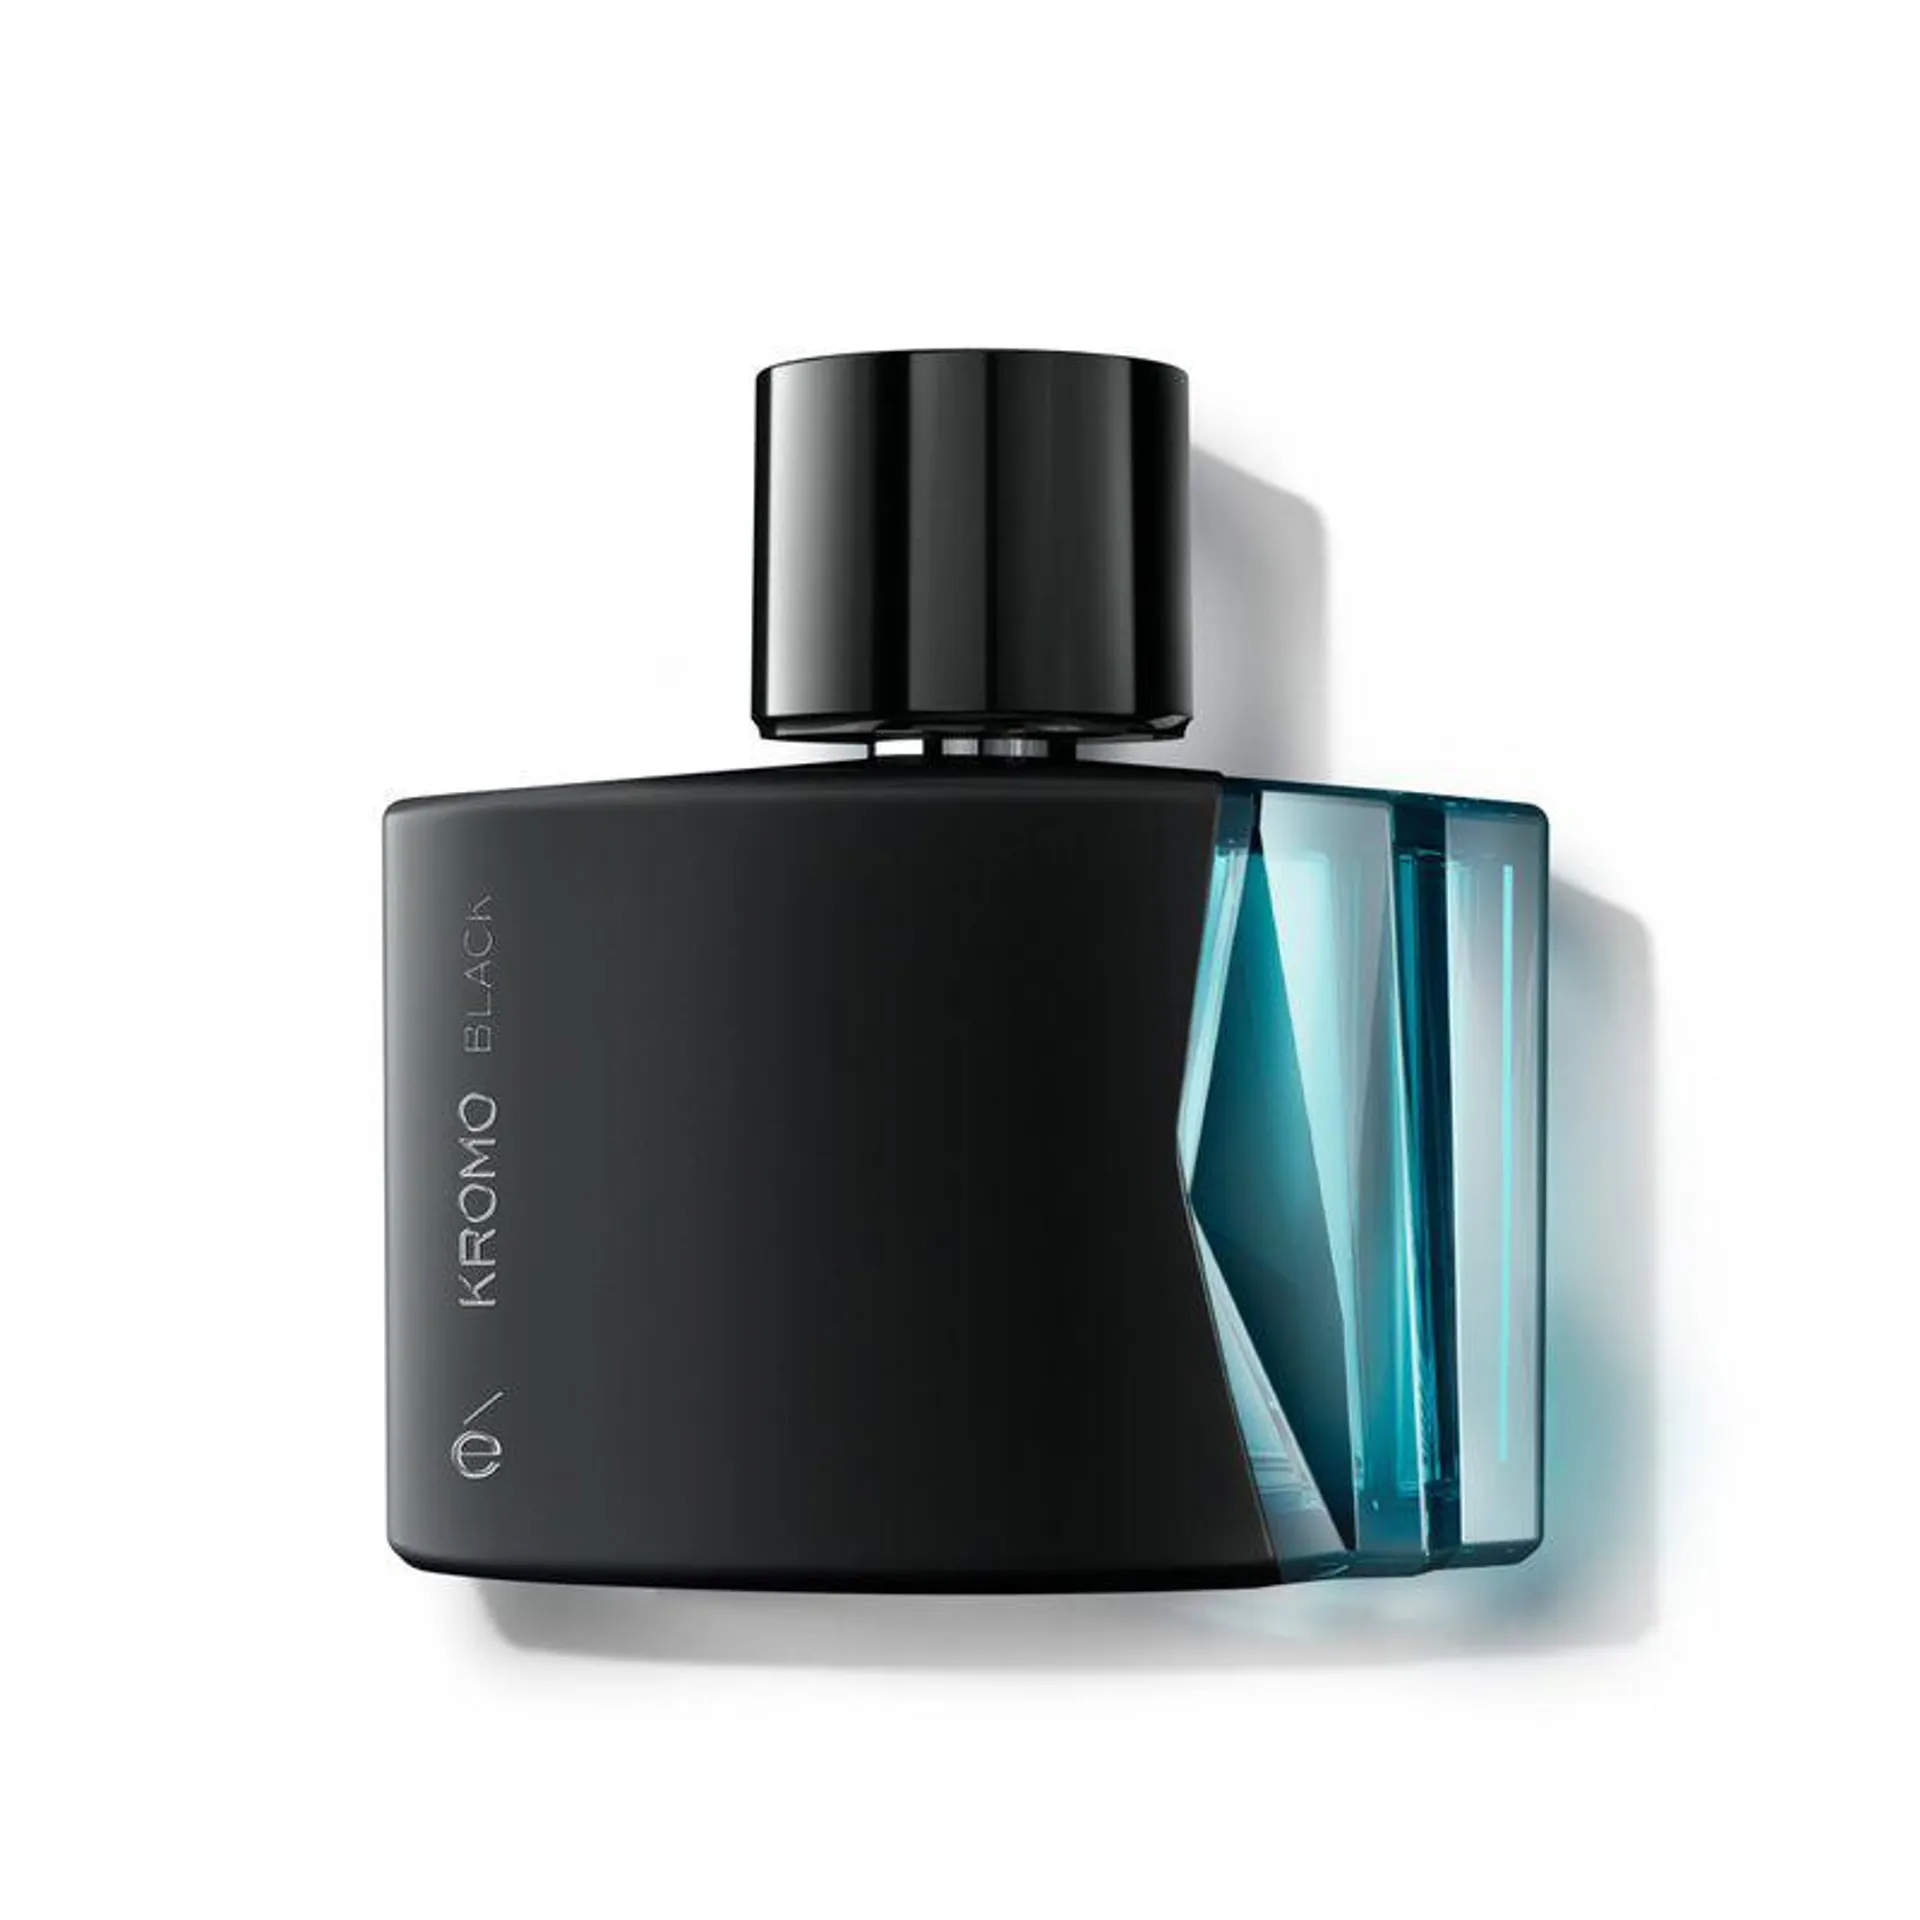 Kromo Black Perfume de Hombre, 90 ml